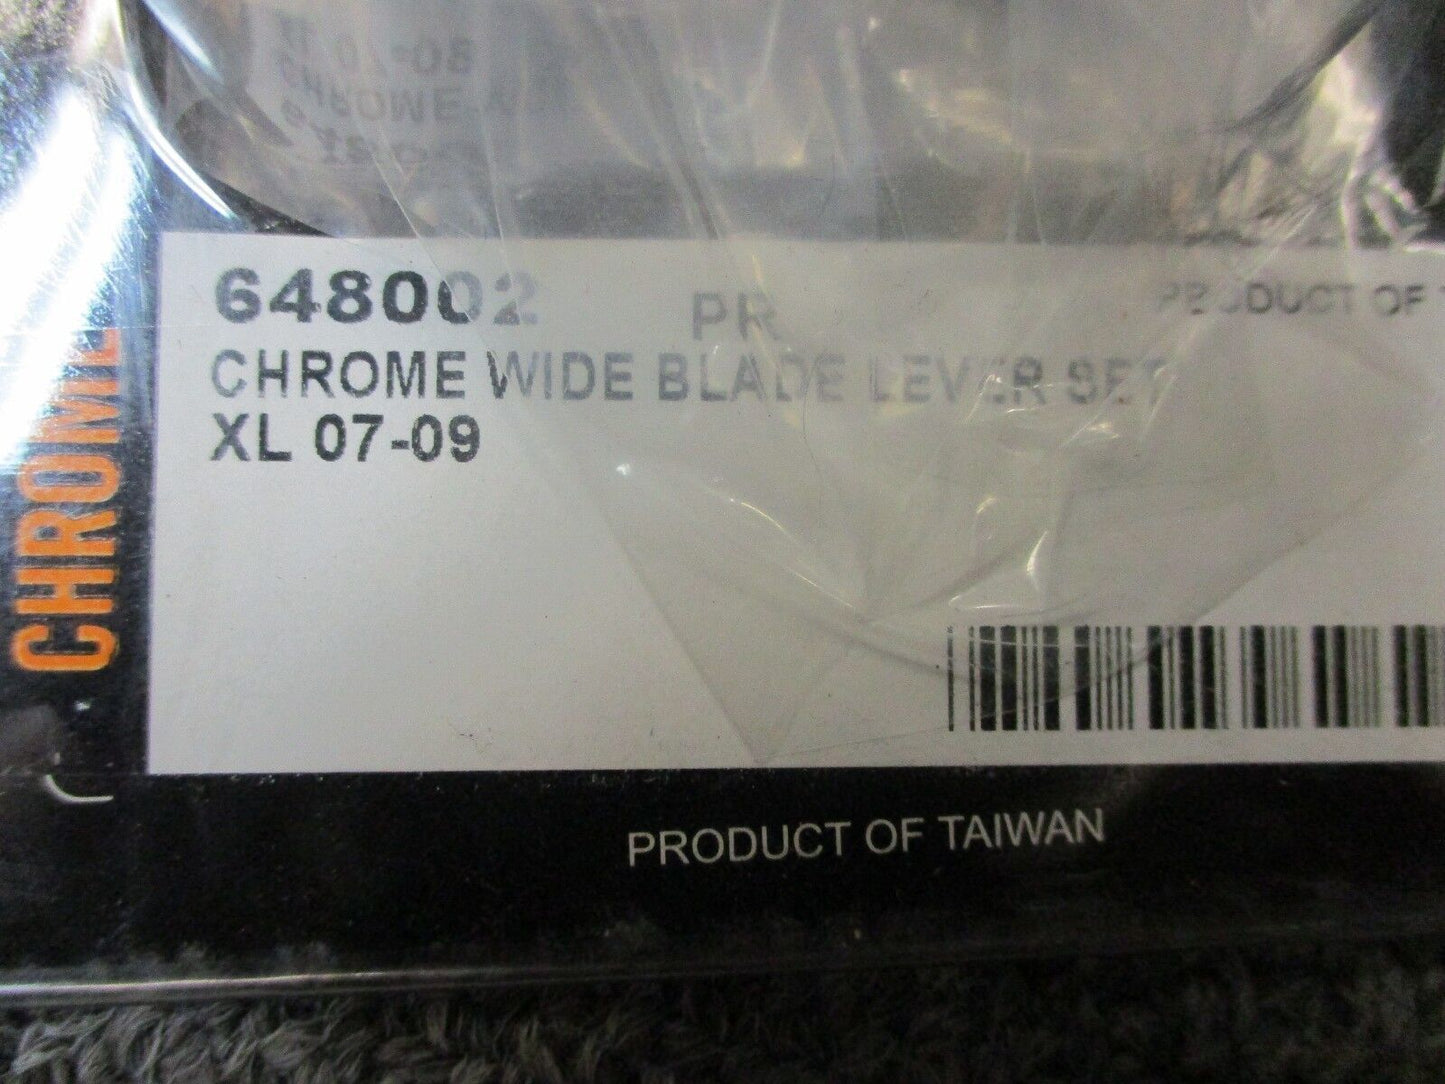 XL 07-09 Chrome Wide Blade Lever Set for Harley Davidson Custom Chrome 648002